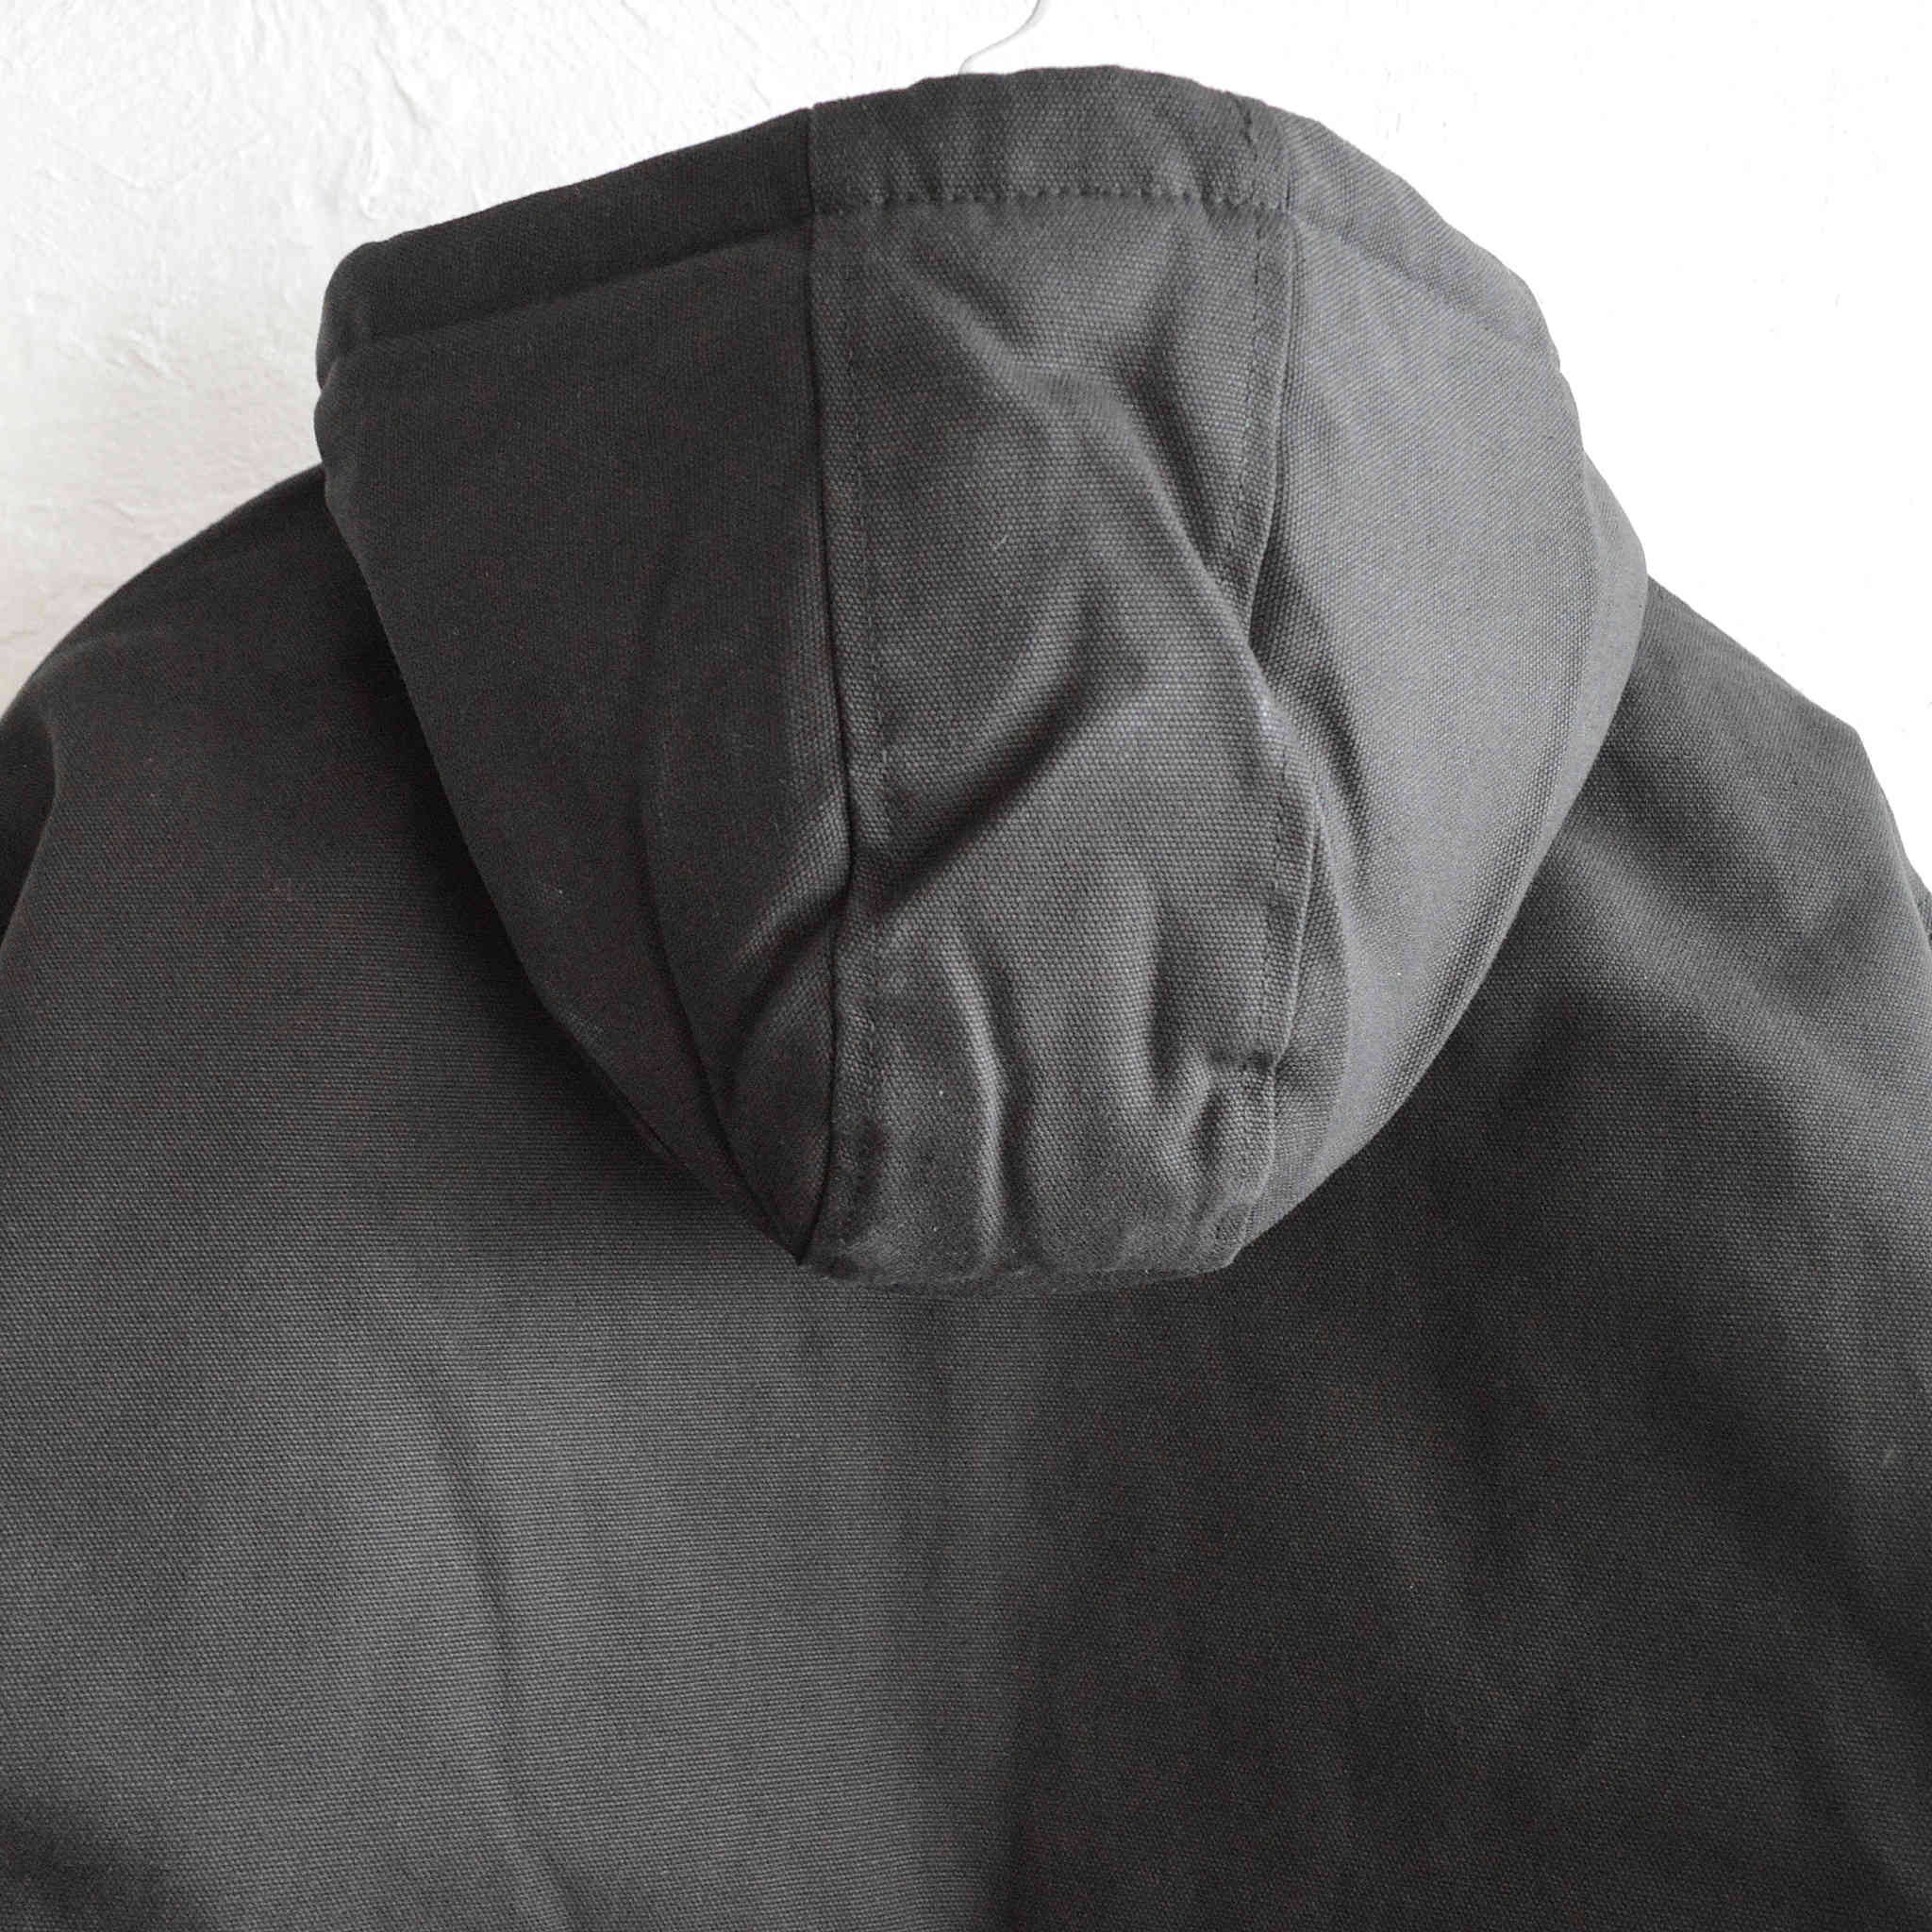 CornerStone コーナーストーン / Duck Cloth Hooded Work Jacket ダッククロスフーディーワークジャケット (BLACK ブラック)